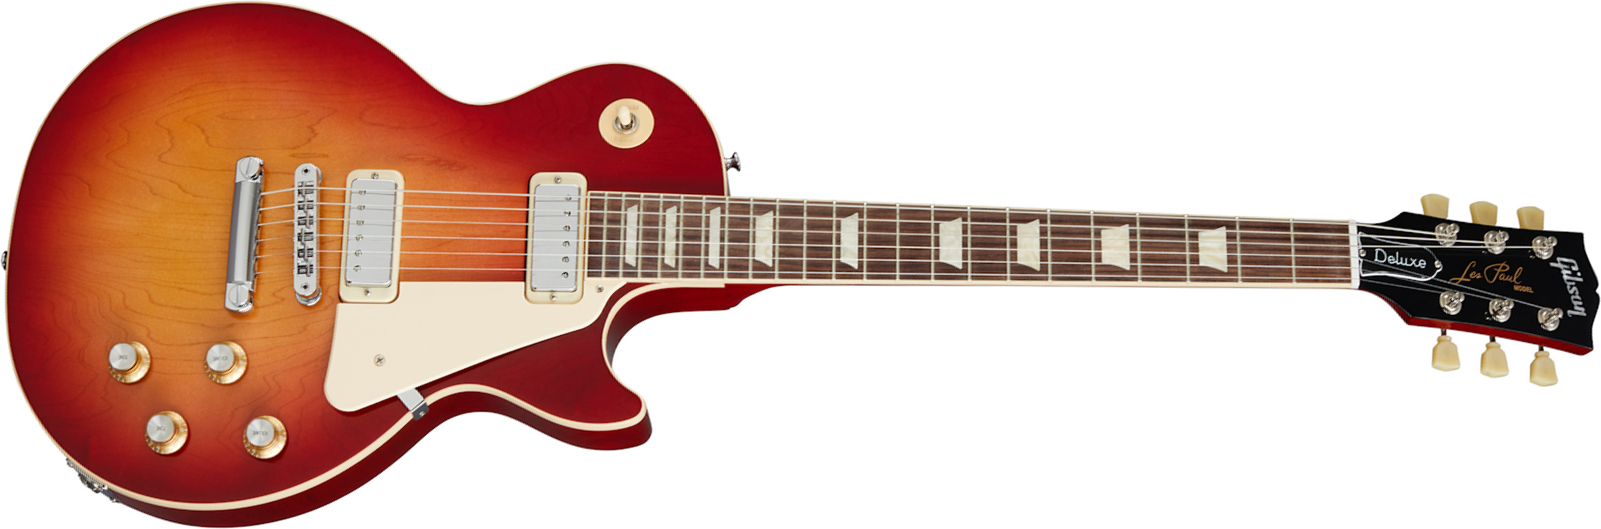 Gibson Les Paul Deluxe 70s Original 2mh Ht Rw - 70s Cherry Sunburst - Enkel gesneden elektrische gitaar - Main picture